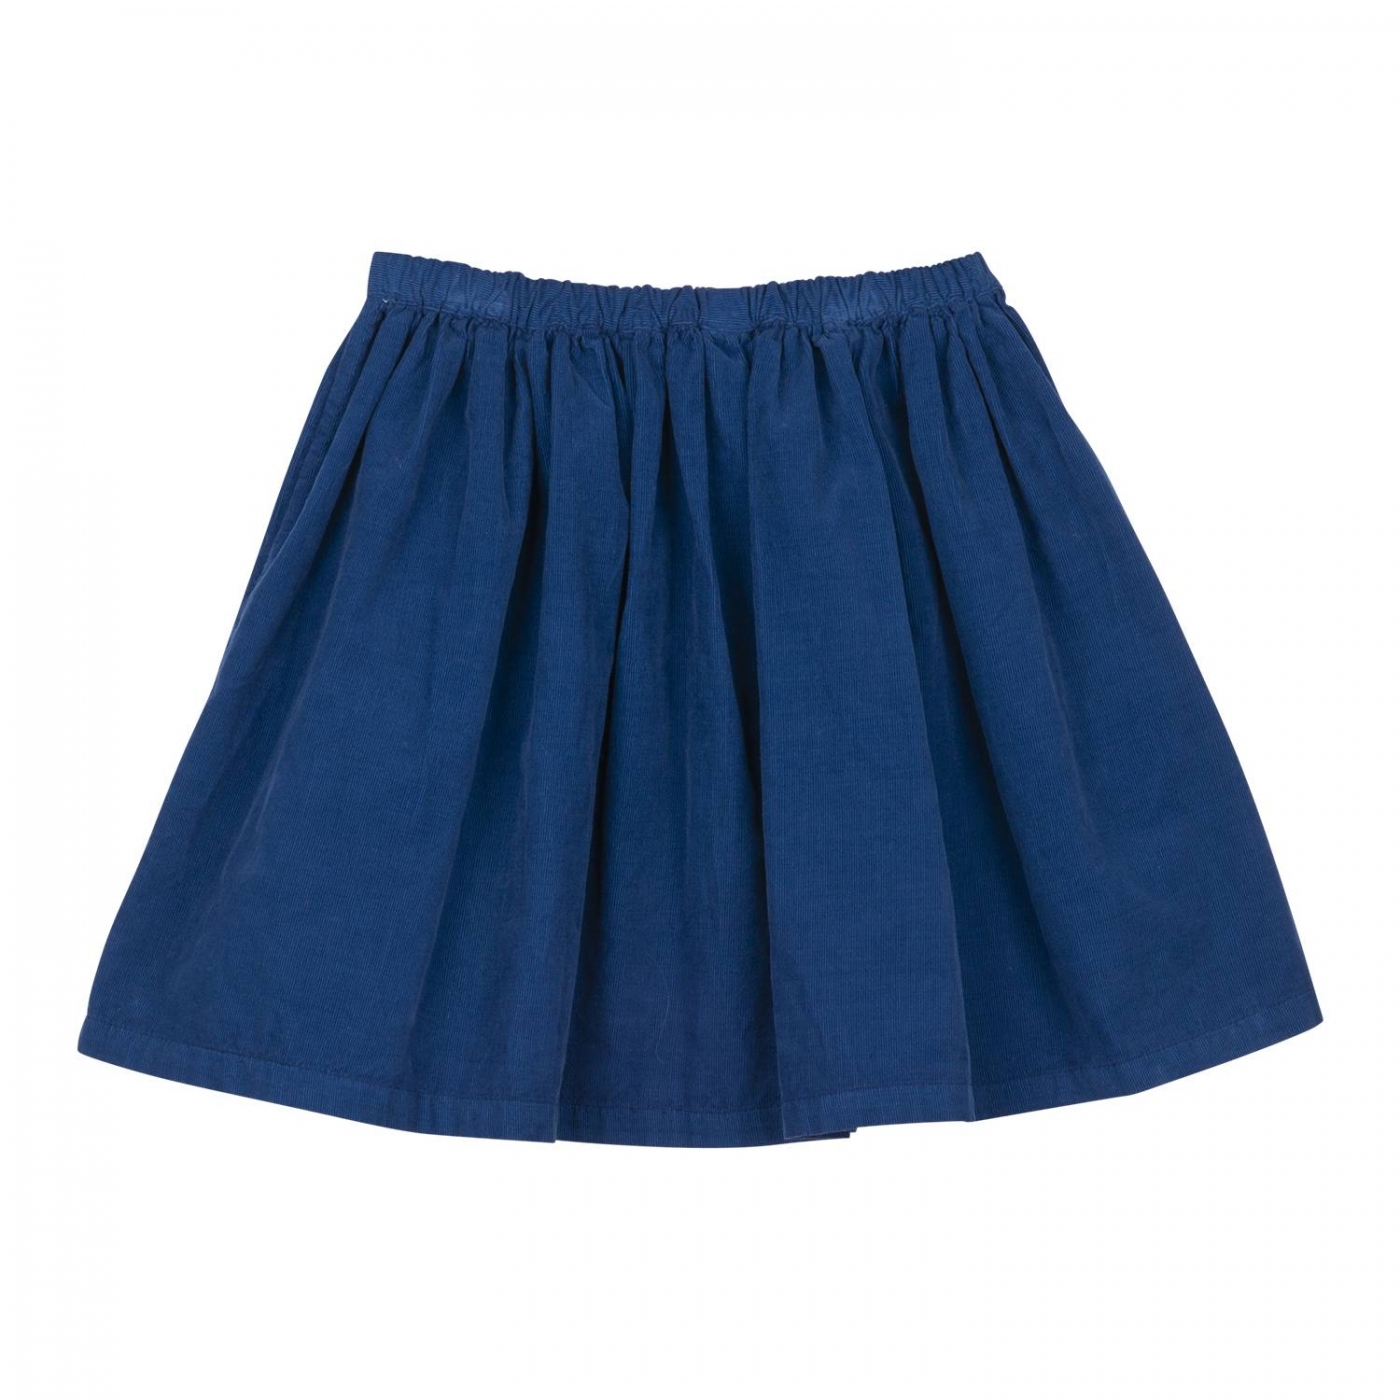 Bonton Skirt Jupe f pat blue